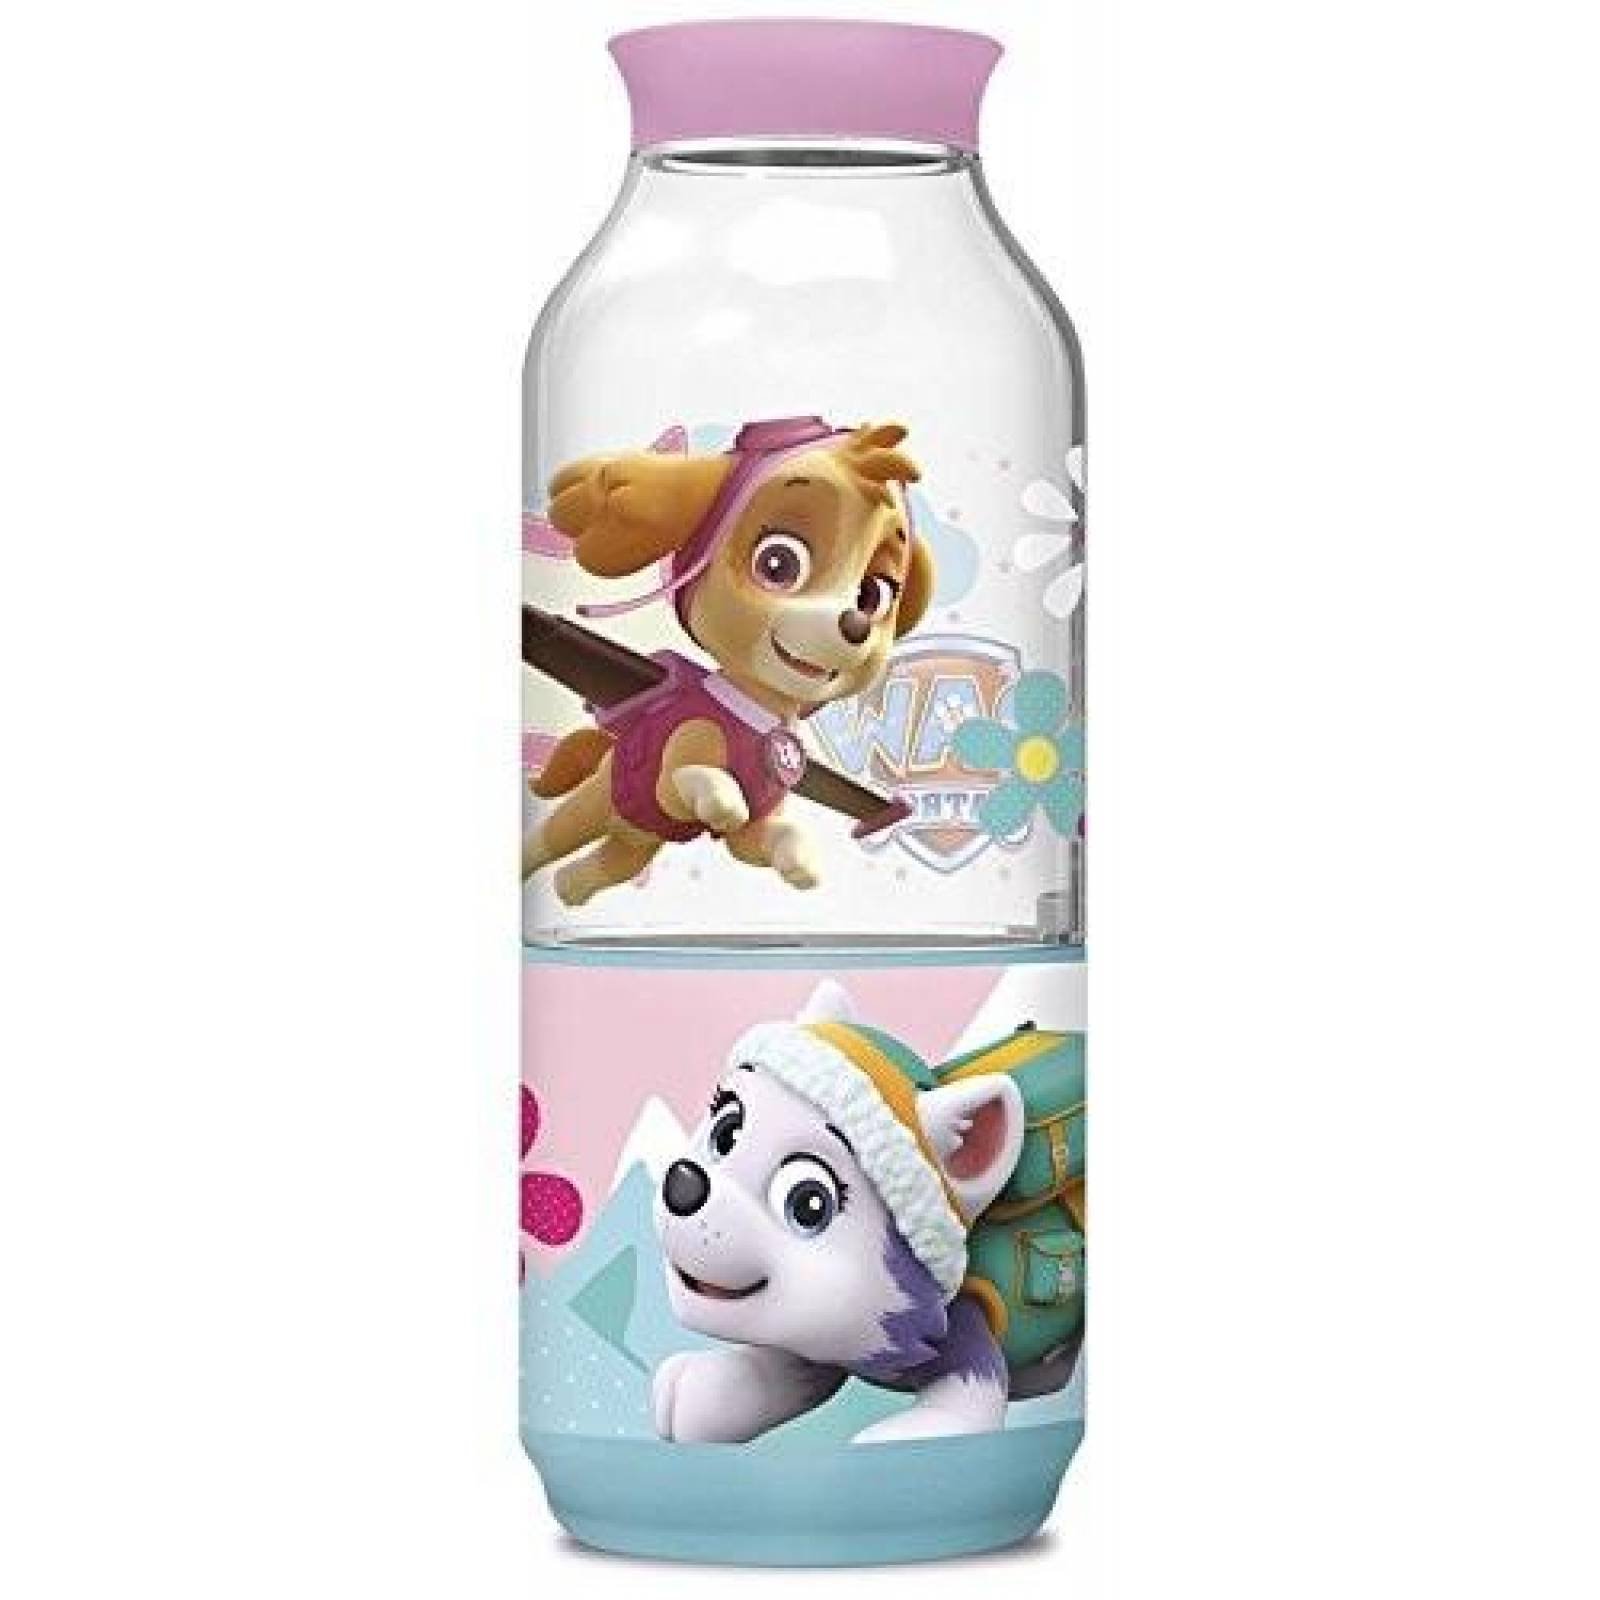  SRV Hub® 2 botellas de agua de plástico de la Patrulla Canina  de 11.5 fl oz, color morado y rojo (Marshall y Skye) : Bebés